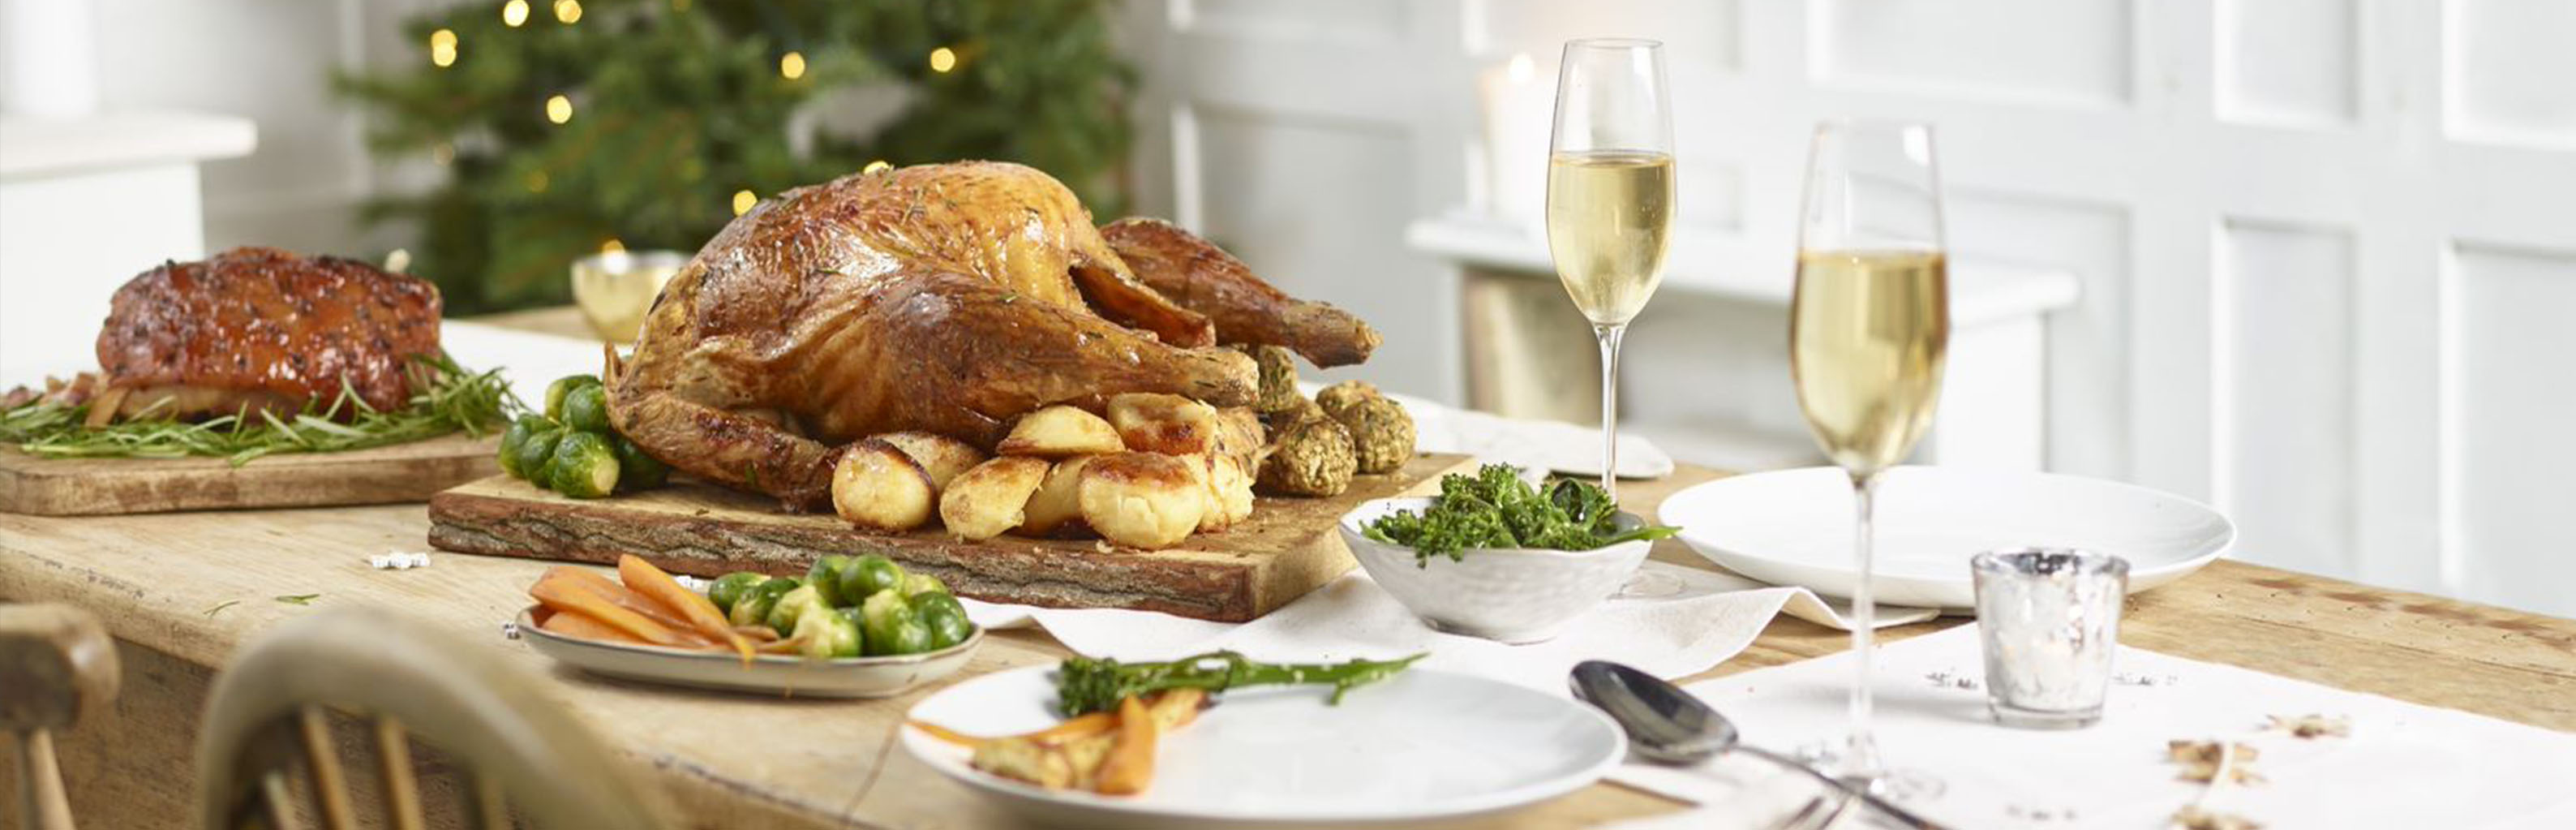 Christmas roast turkey dinner